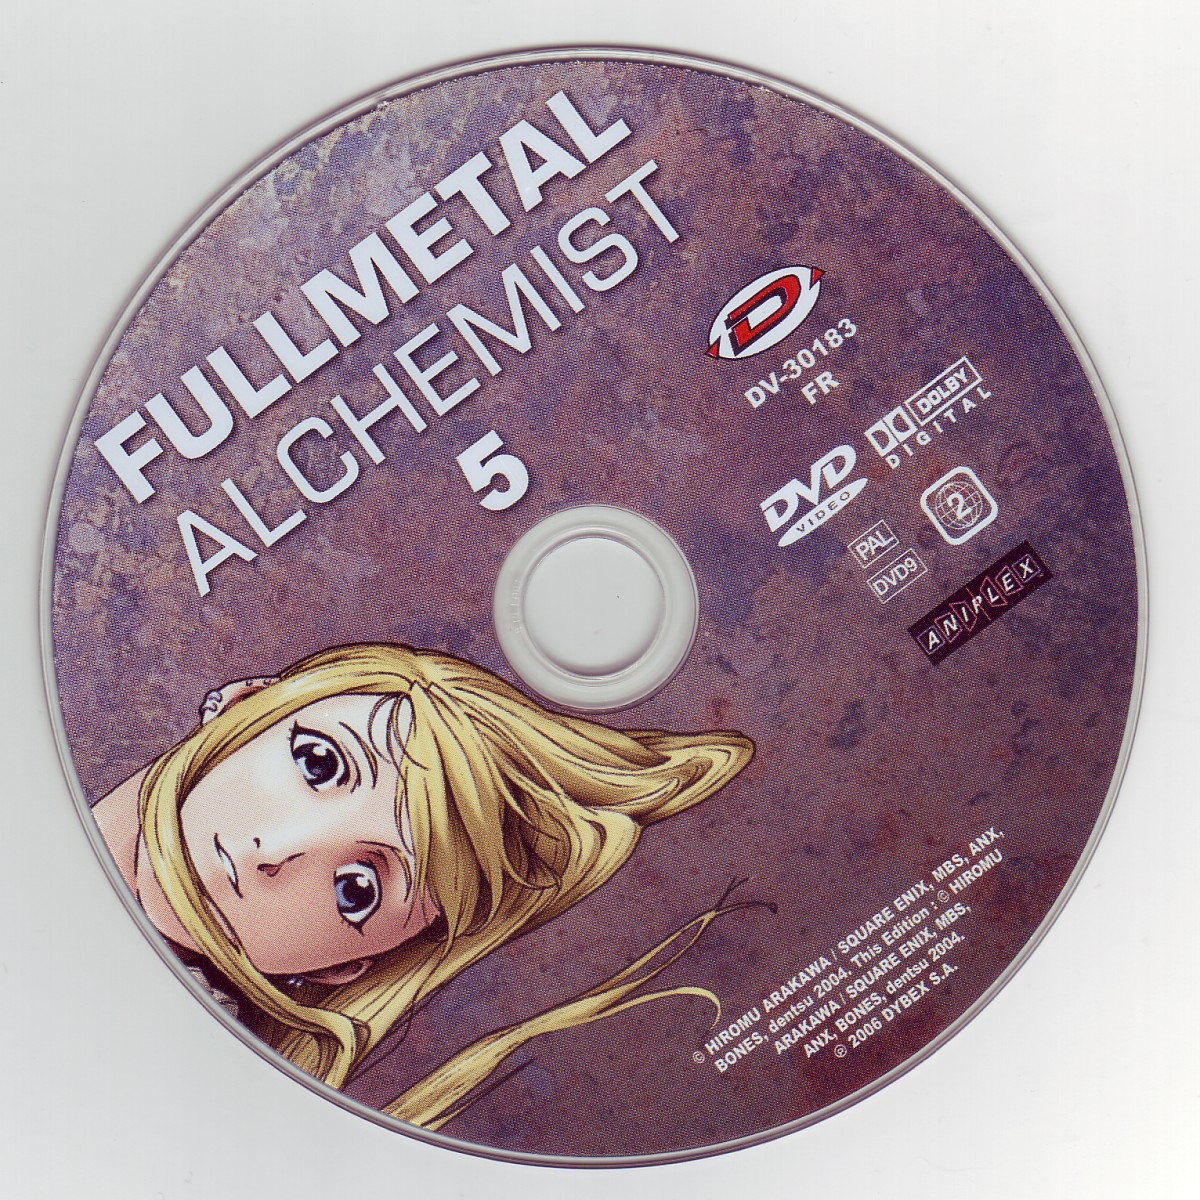 Fullmetal alchemist vol 5